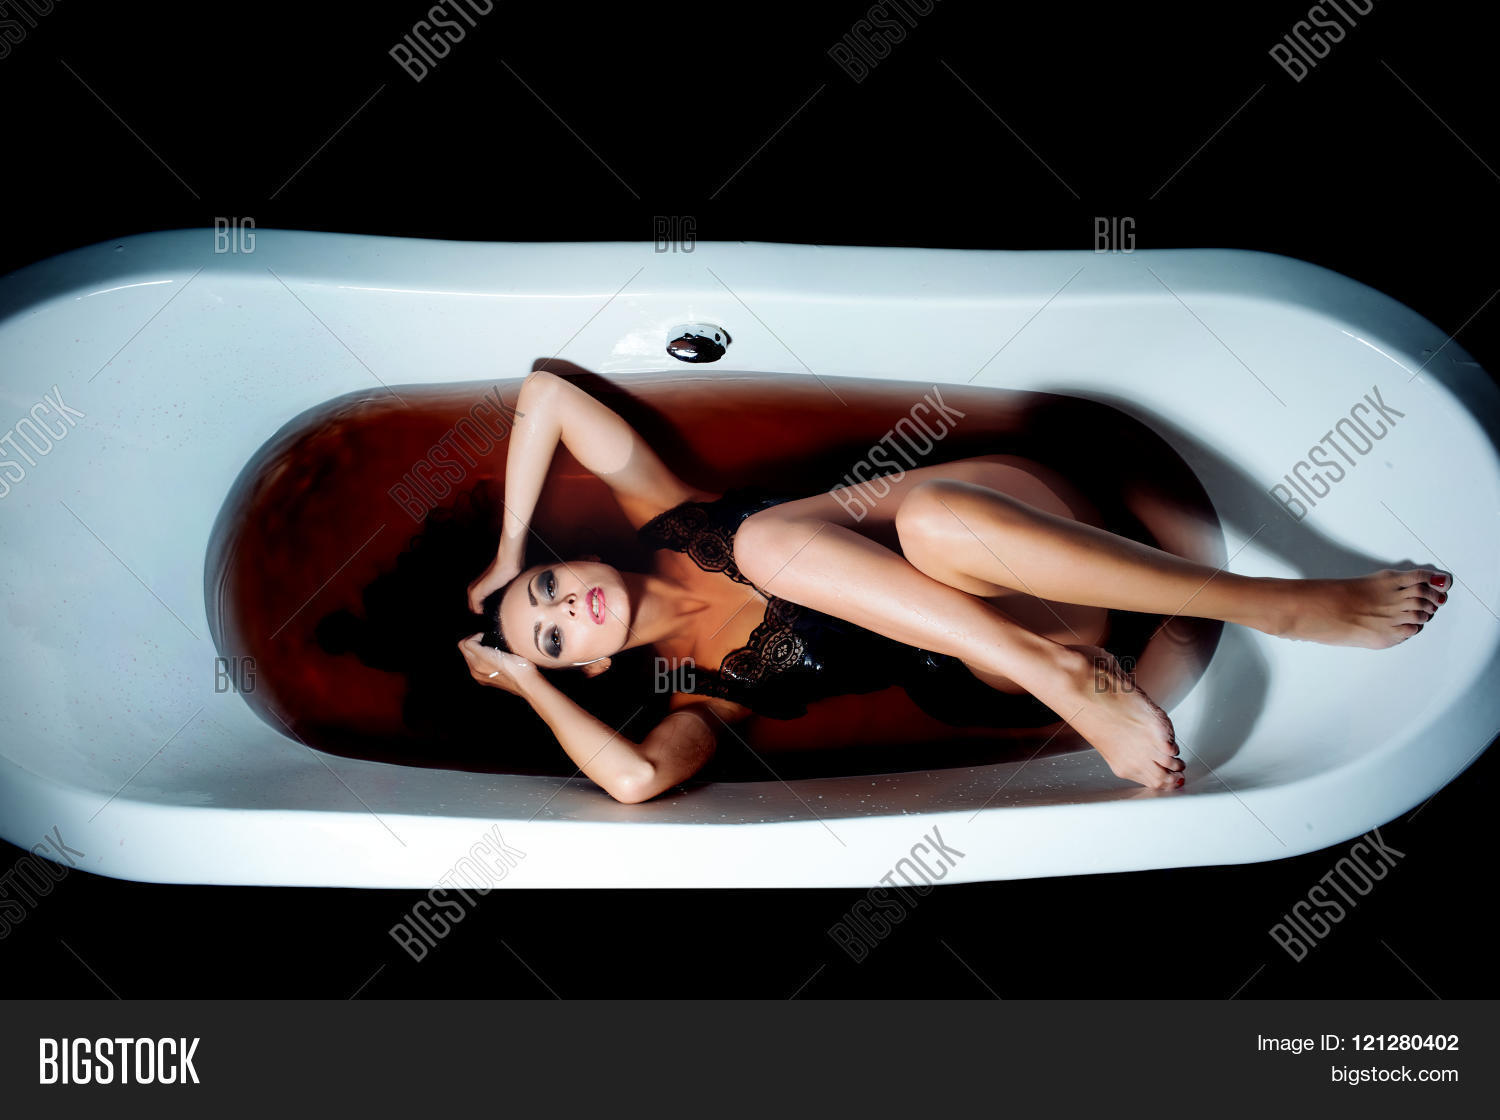 amy heywood add sexy bath tub pics photo